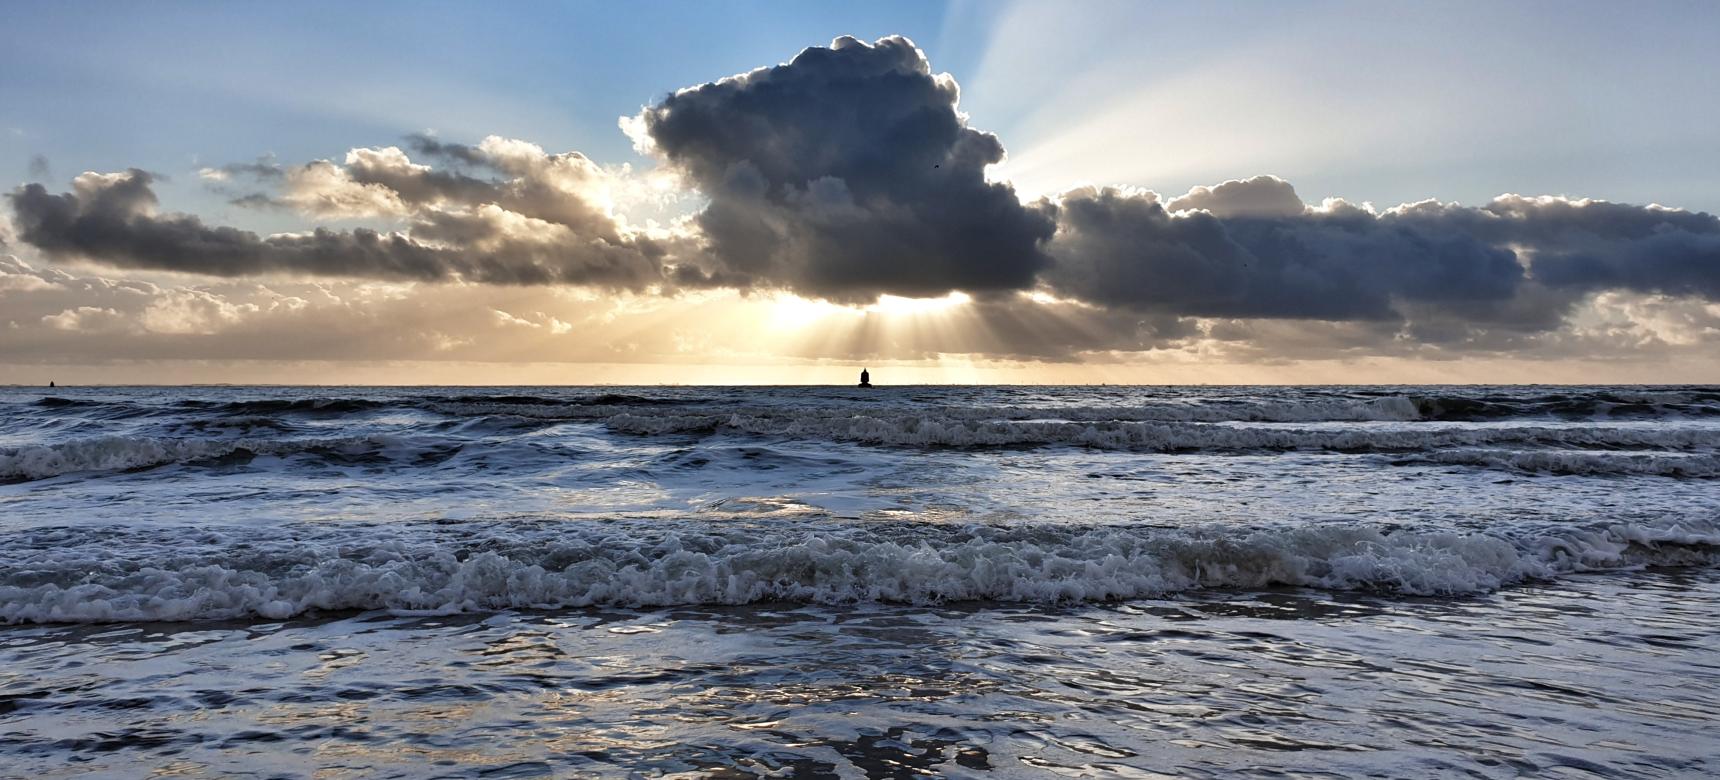 Noordzee bij de kust van Zuidwest Walcheren, Zoutelande (gemaakt door Noëlle Verhage)